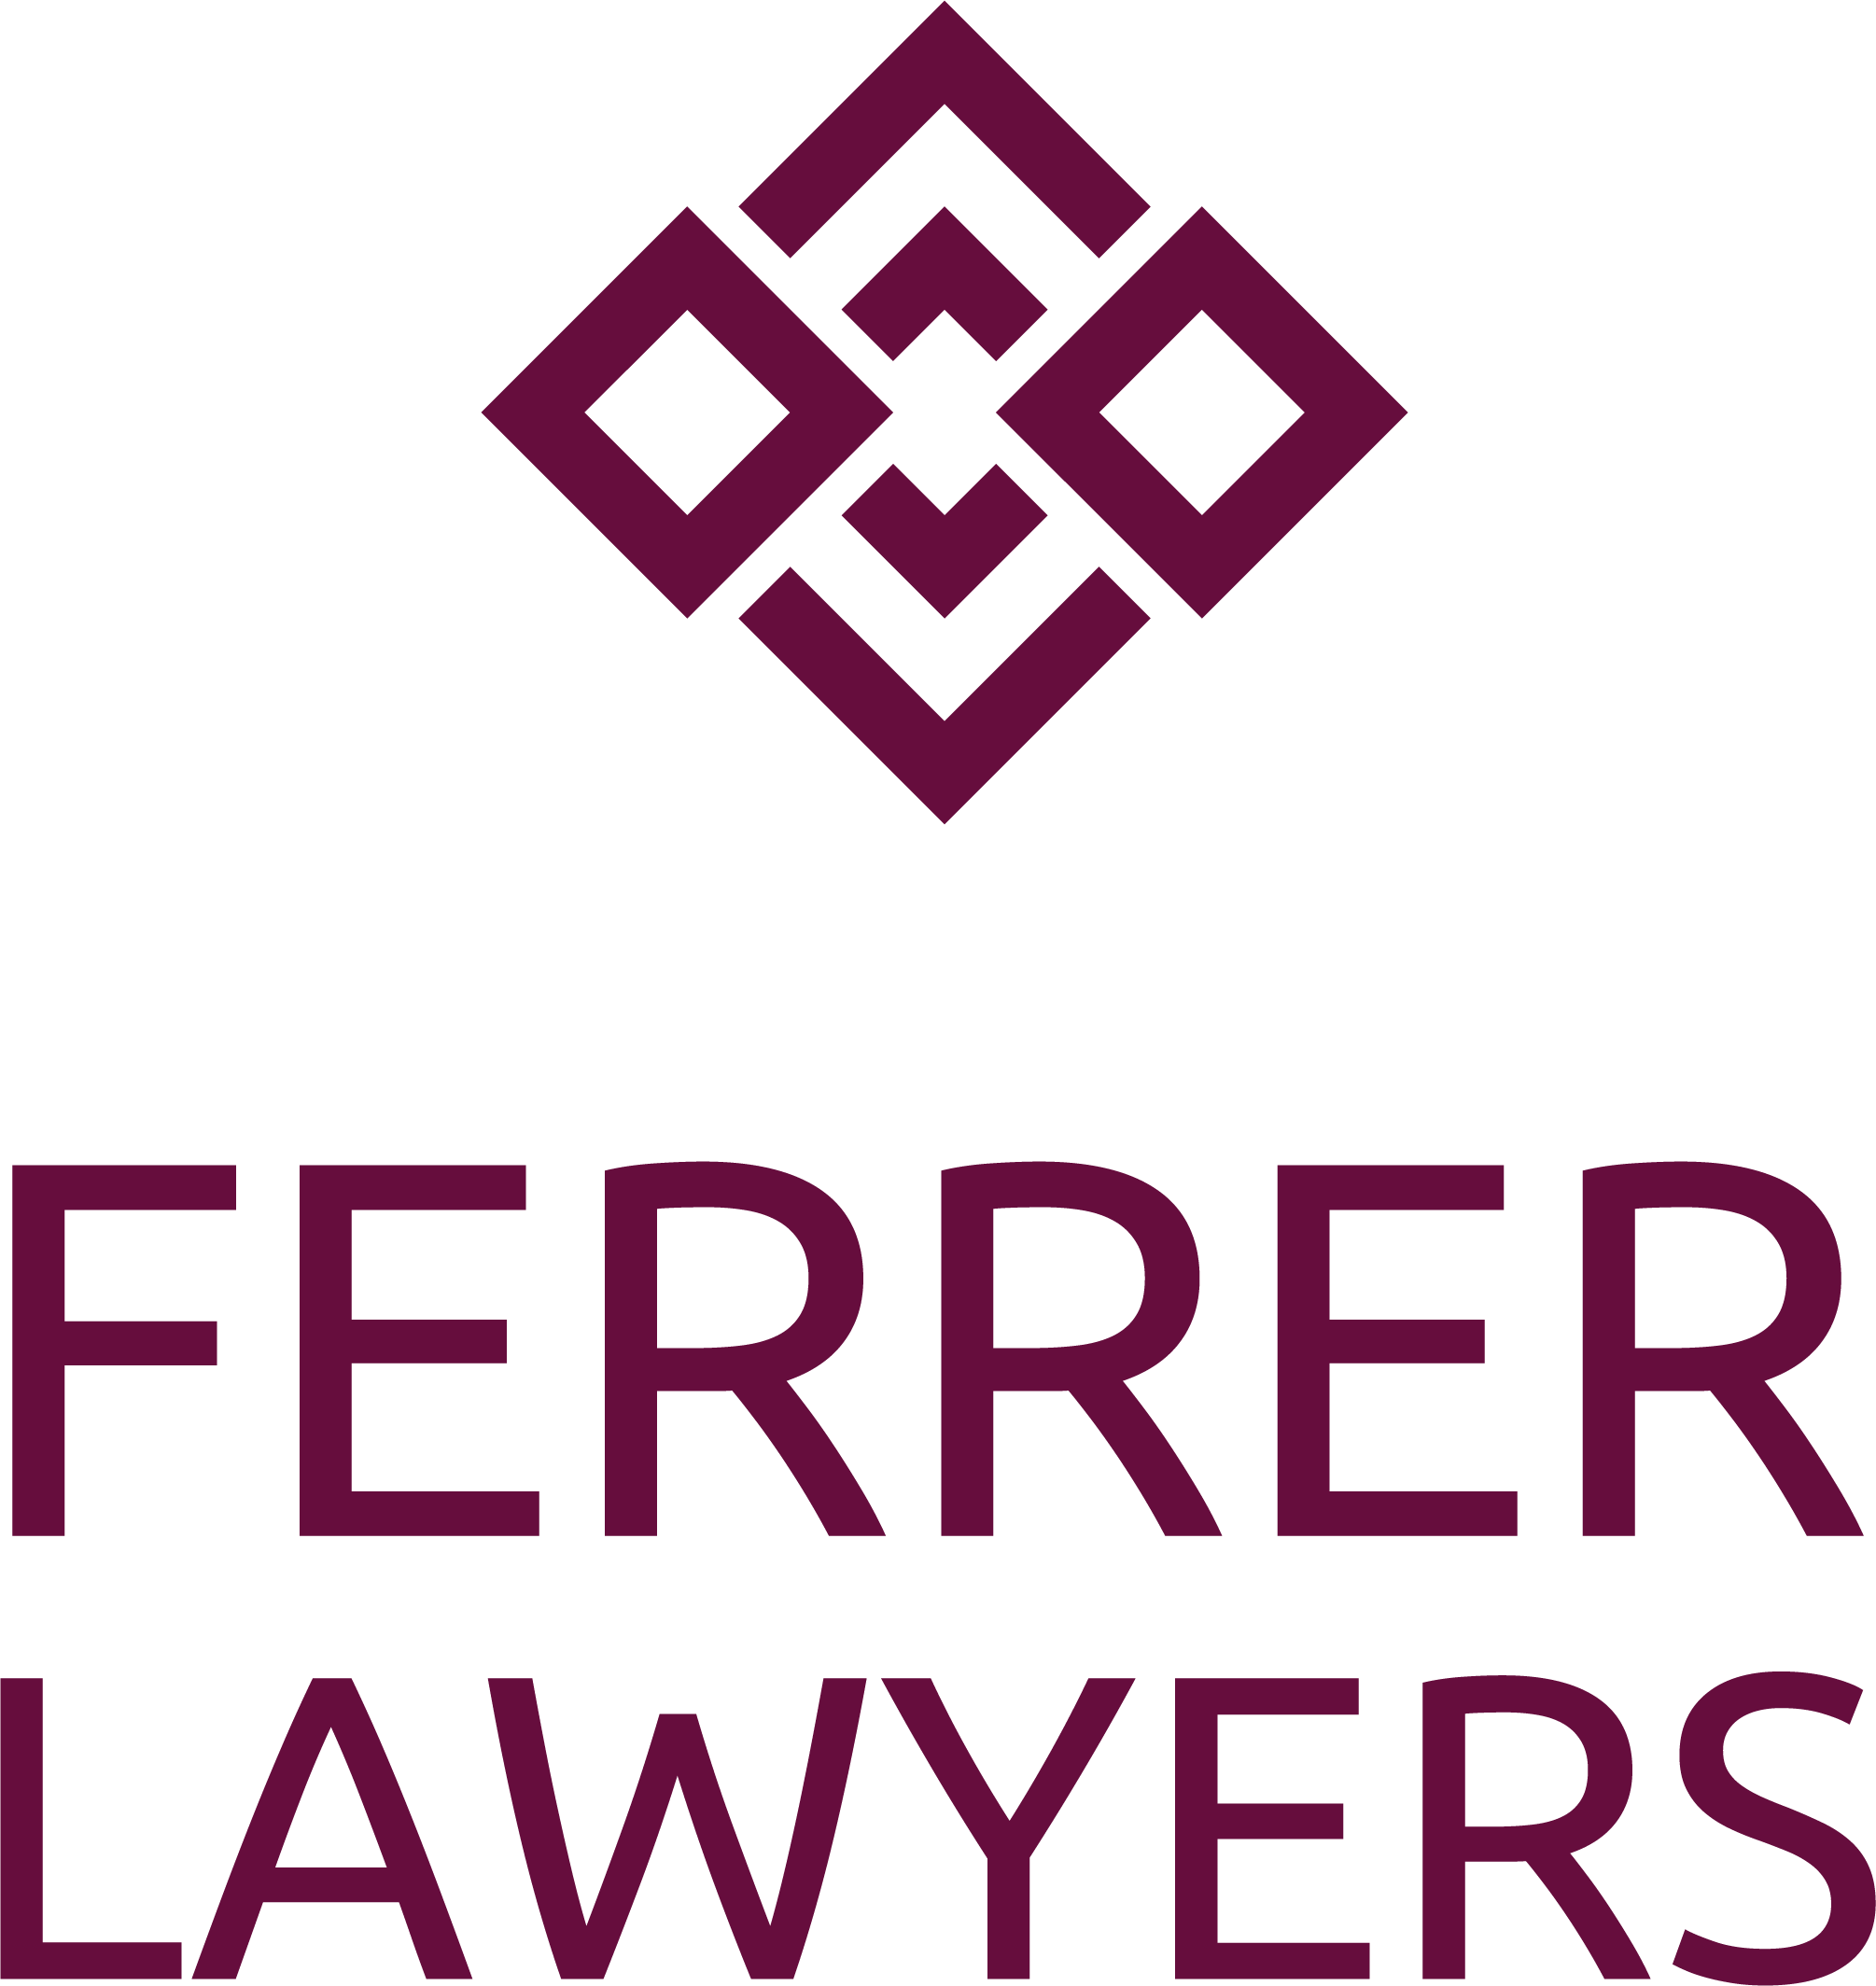 Ferrer lawyers